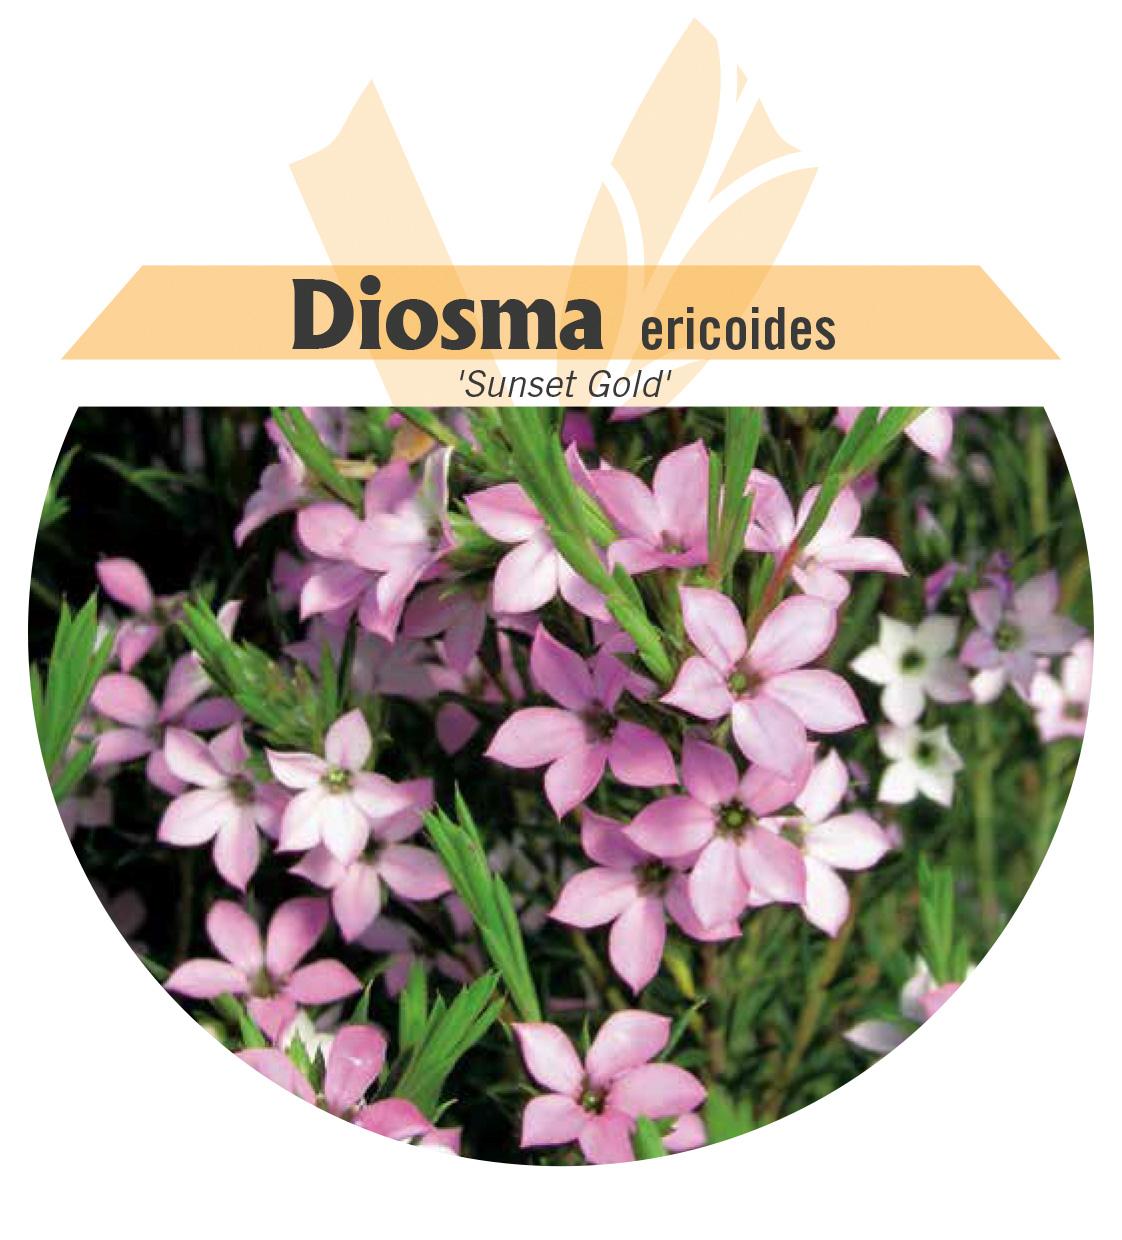 Diosma ericoides